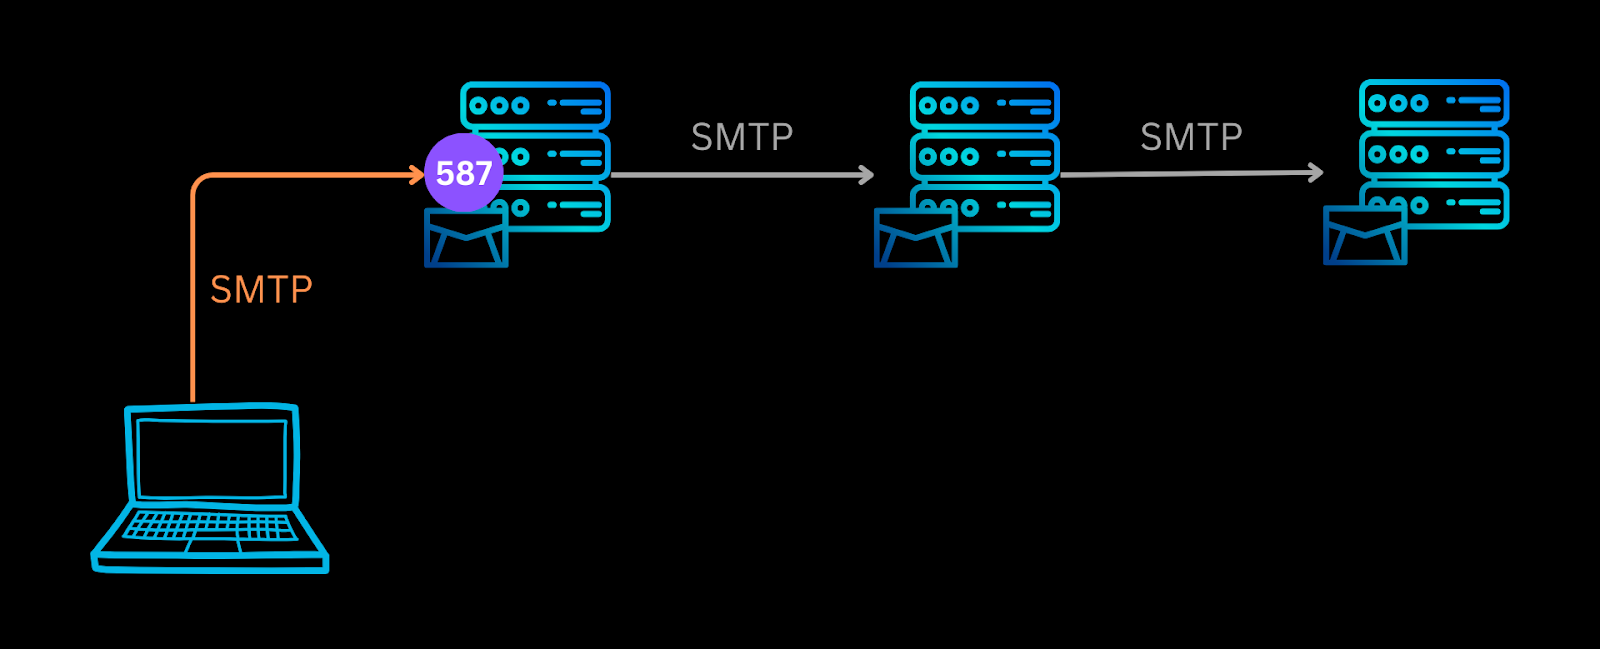 SMTP port 587